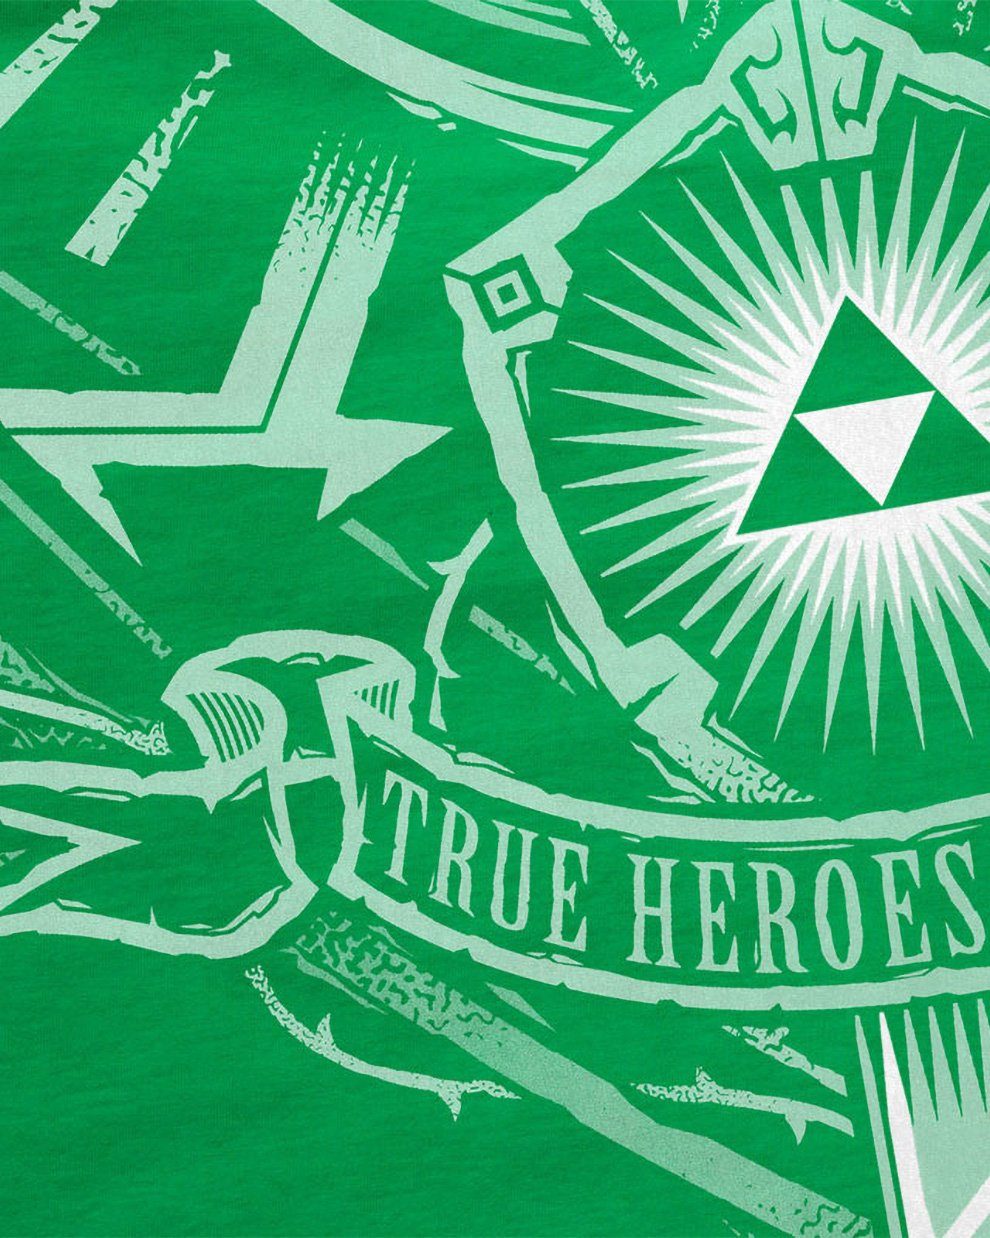 Hyrule T-Shirt Wappen Print-Shirt grün gamer Kinder link style3